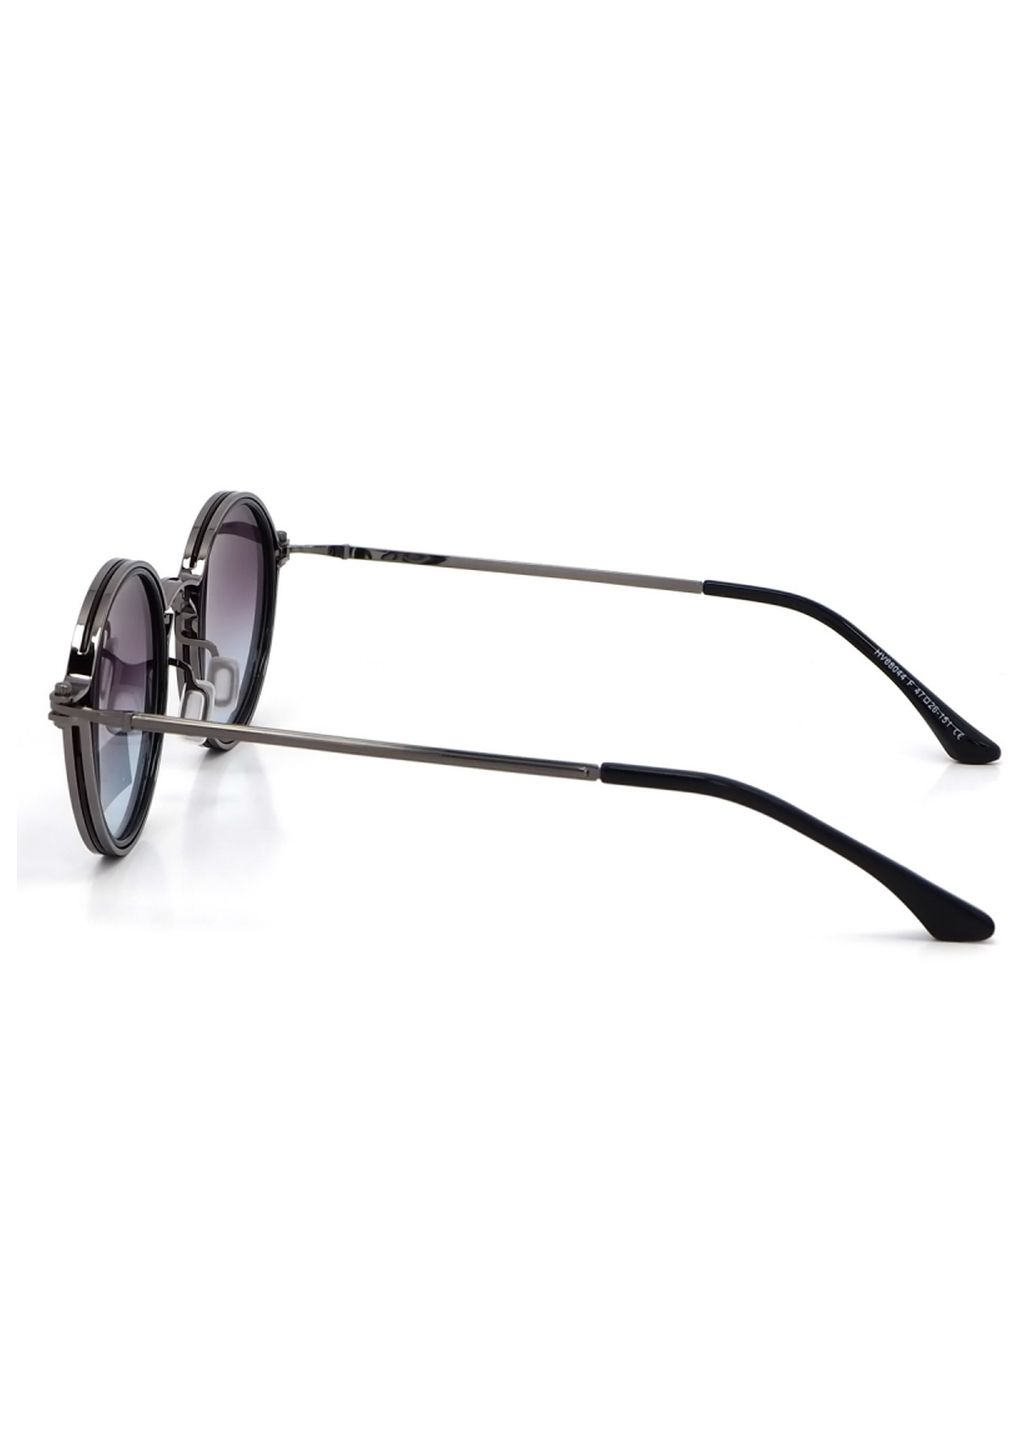 Купить Солнцезащитные очки c поляризацией HAVVS HV68044 170010 - Черный в интернет-магазине